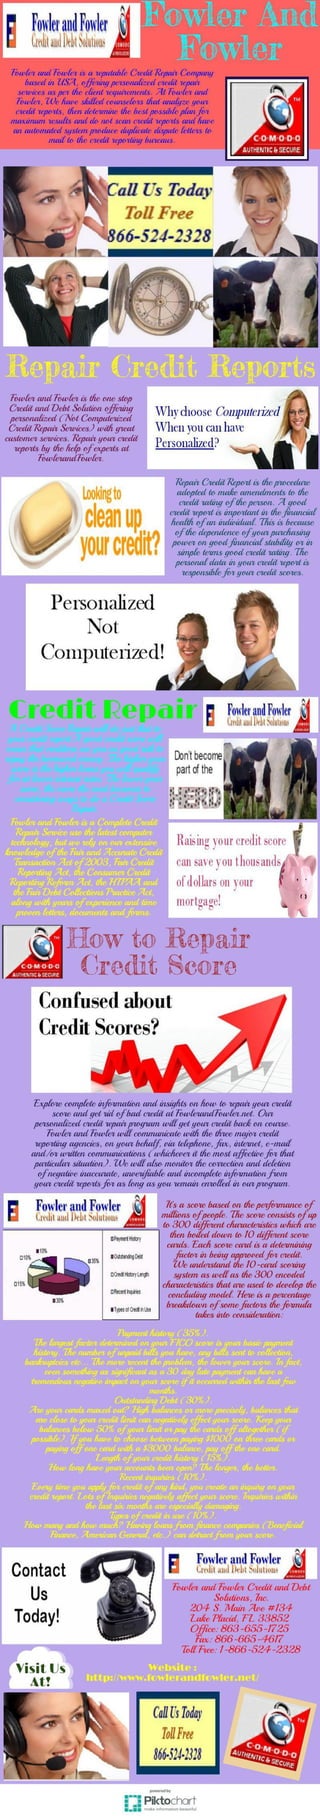 How to repair credit score